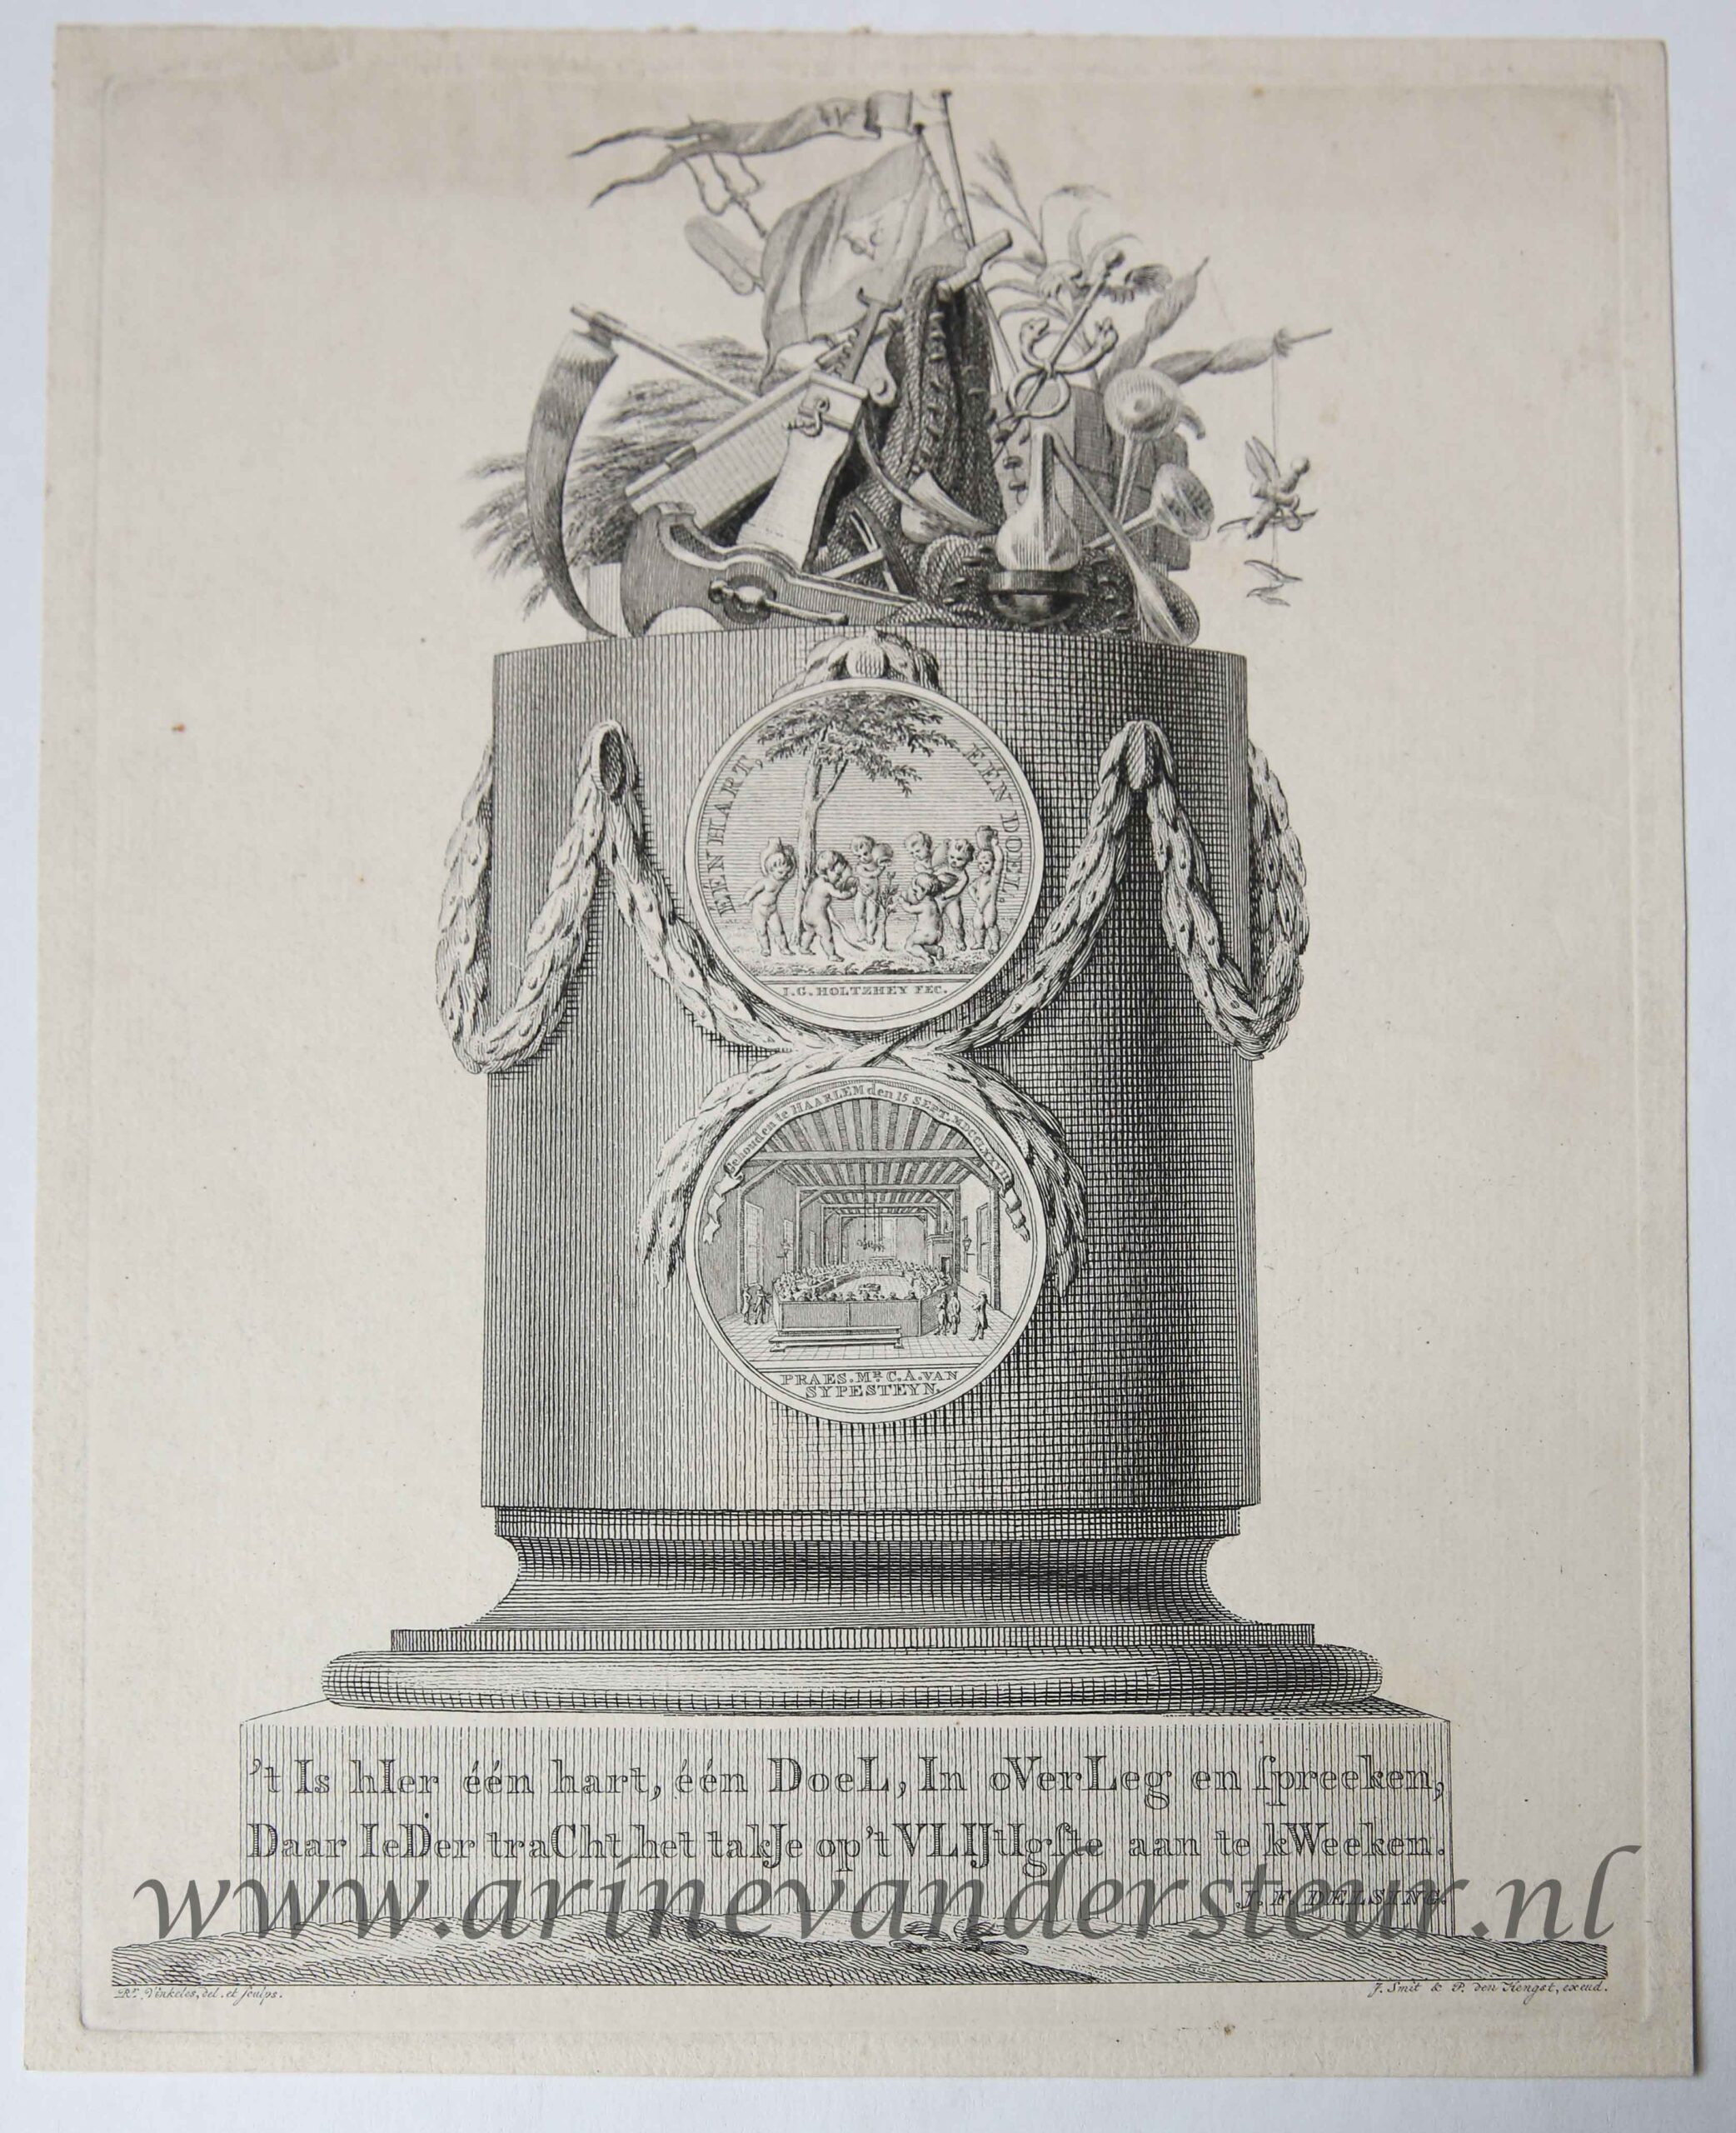 [Antique title page, 1778] Tijdvers op de algemene vergadering van de Oeconomische tak van de Maatschappij der Wetenschappen te Haarlem, published 1778, 1 p.